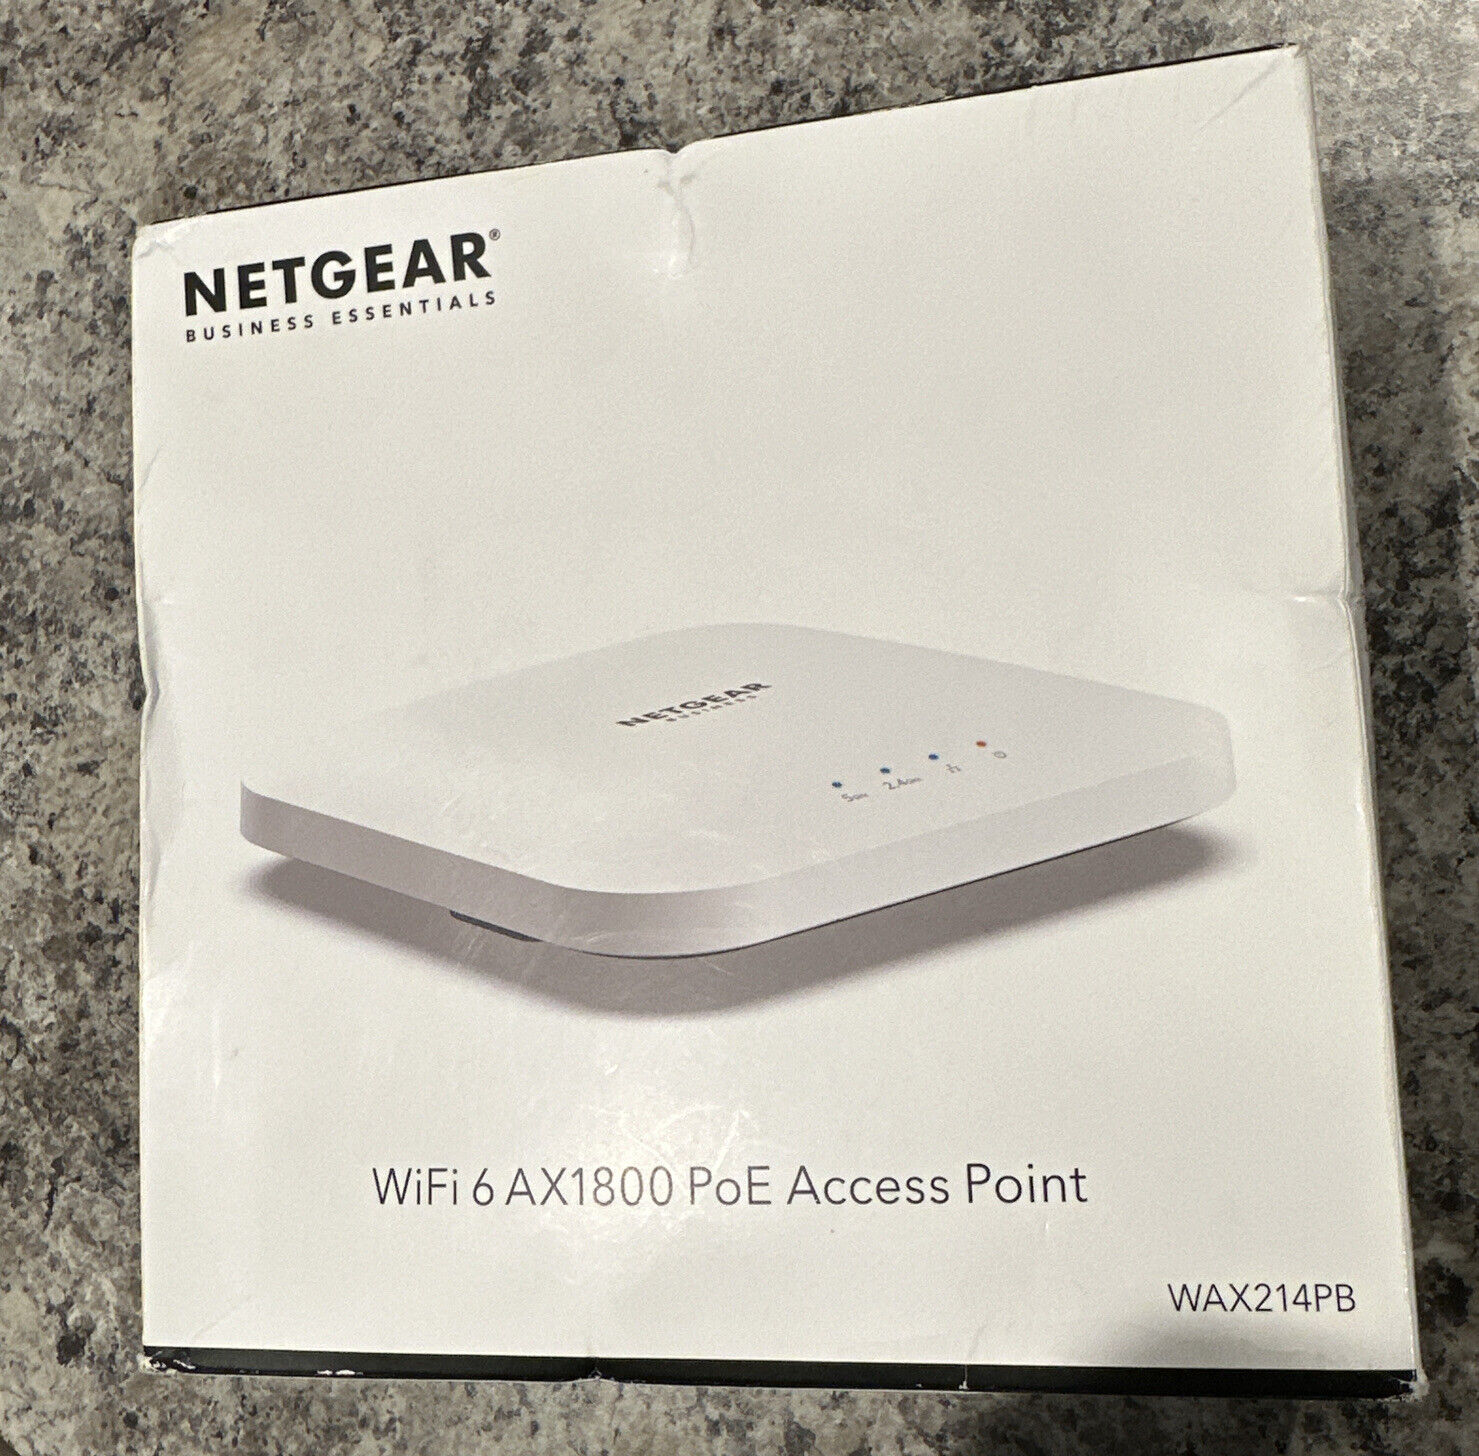 New NETGEAR Business Essentials Wi-Fi 6 AX1800 PoE Access Point WAX214PB-100NAS